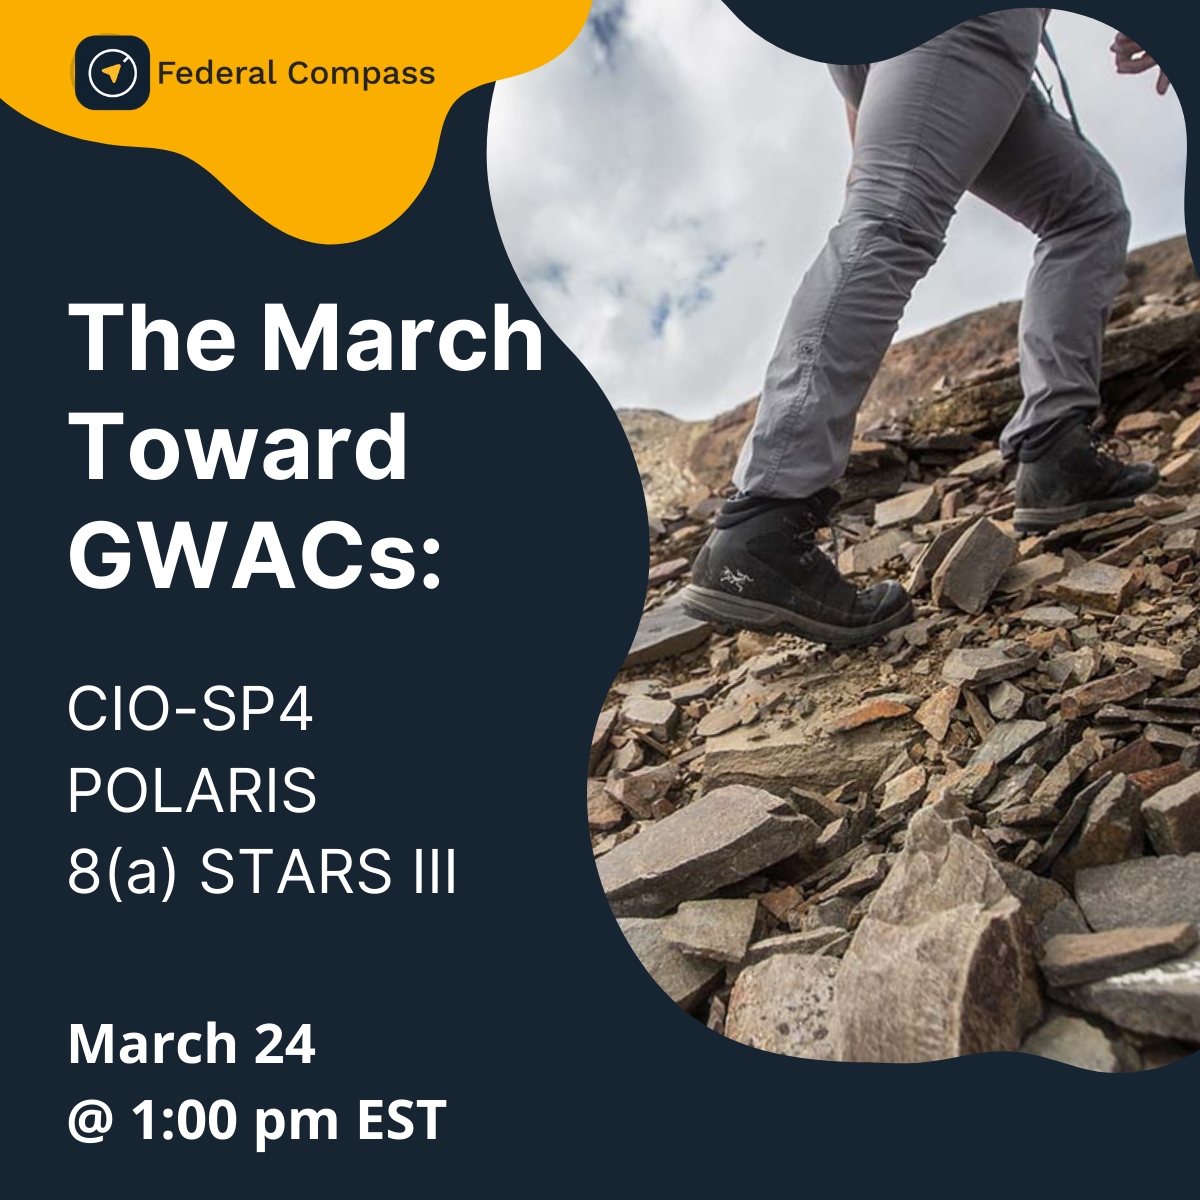 The March Toward GWACS: CIO-SP4, POLARIS, 8(a) STARS III